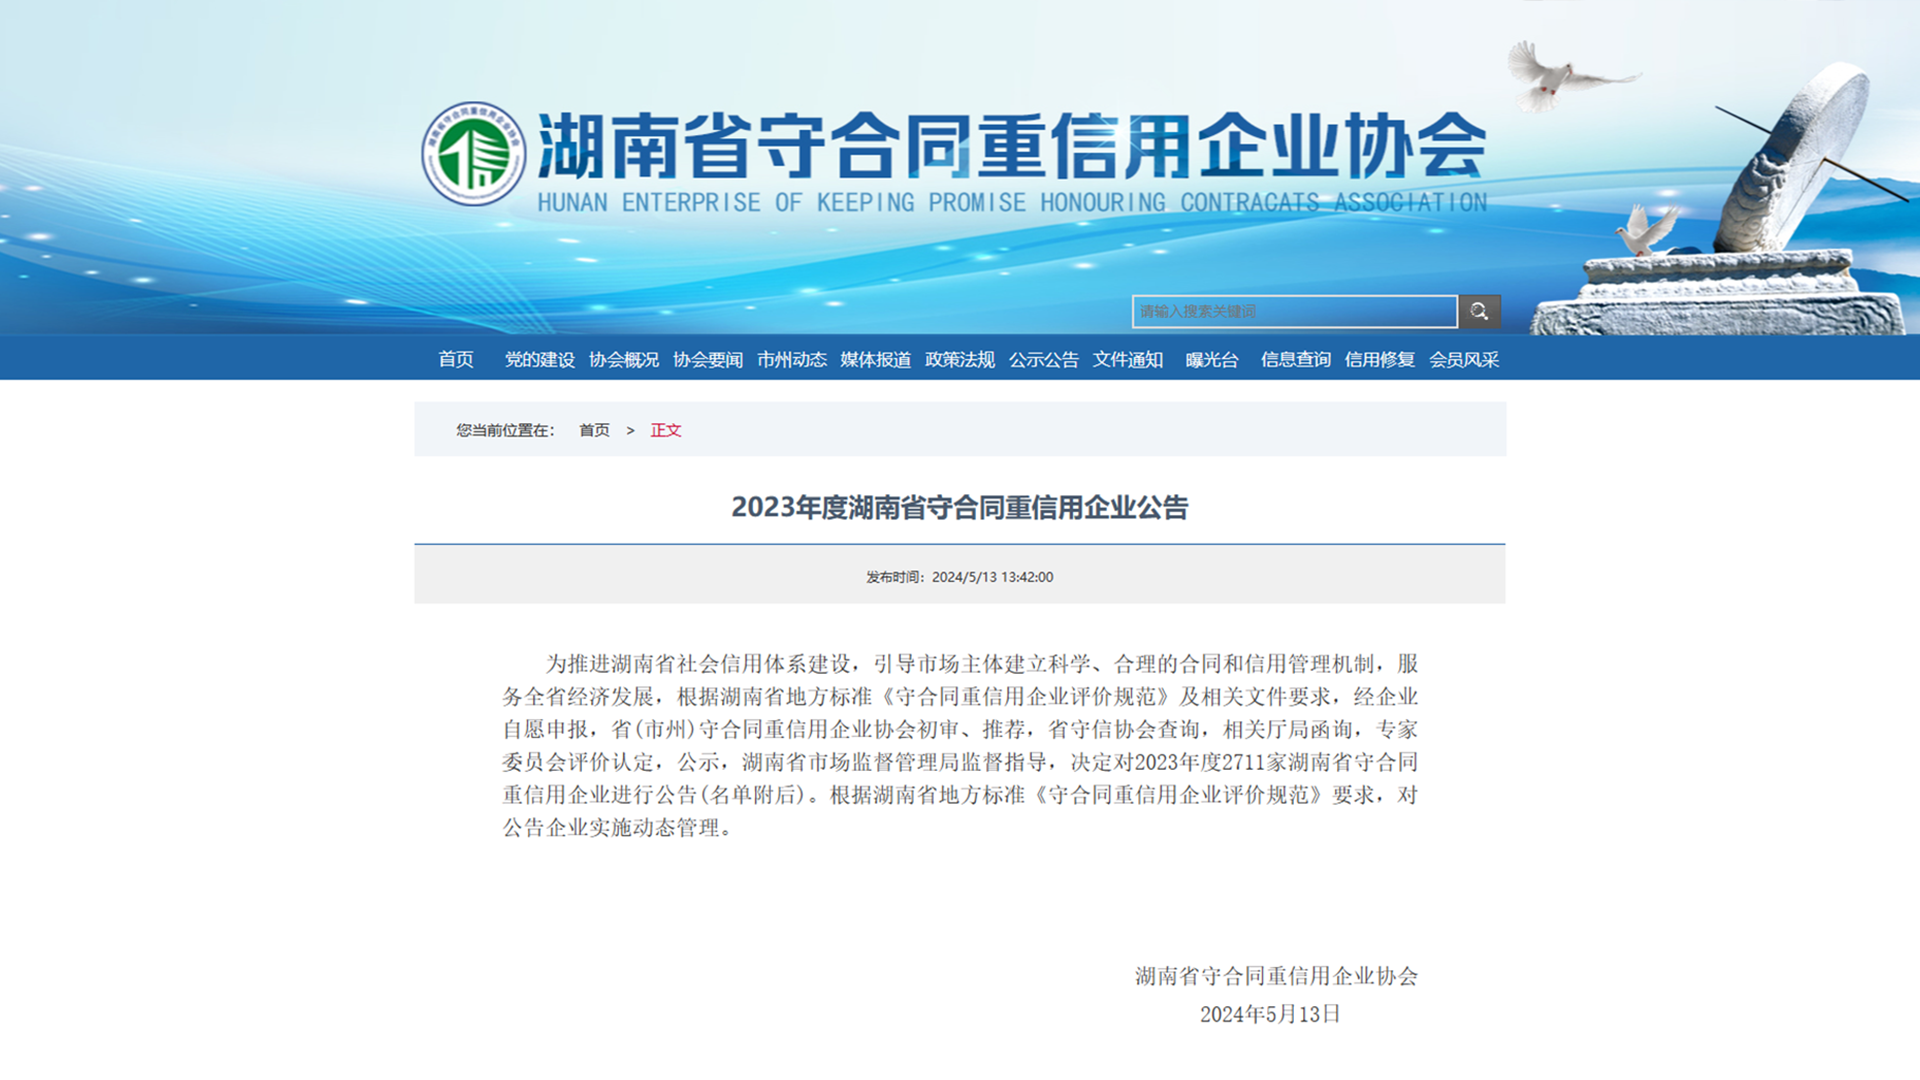 2023年度湖南省守合同重信用企业公告公示.png